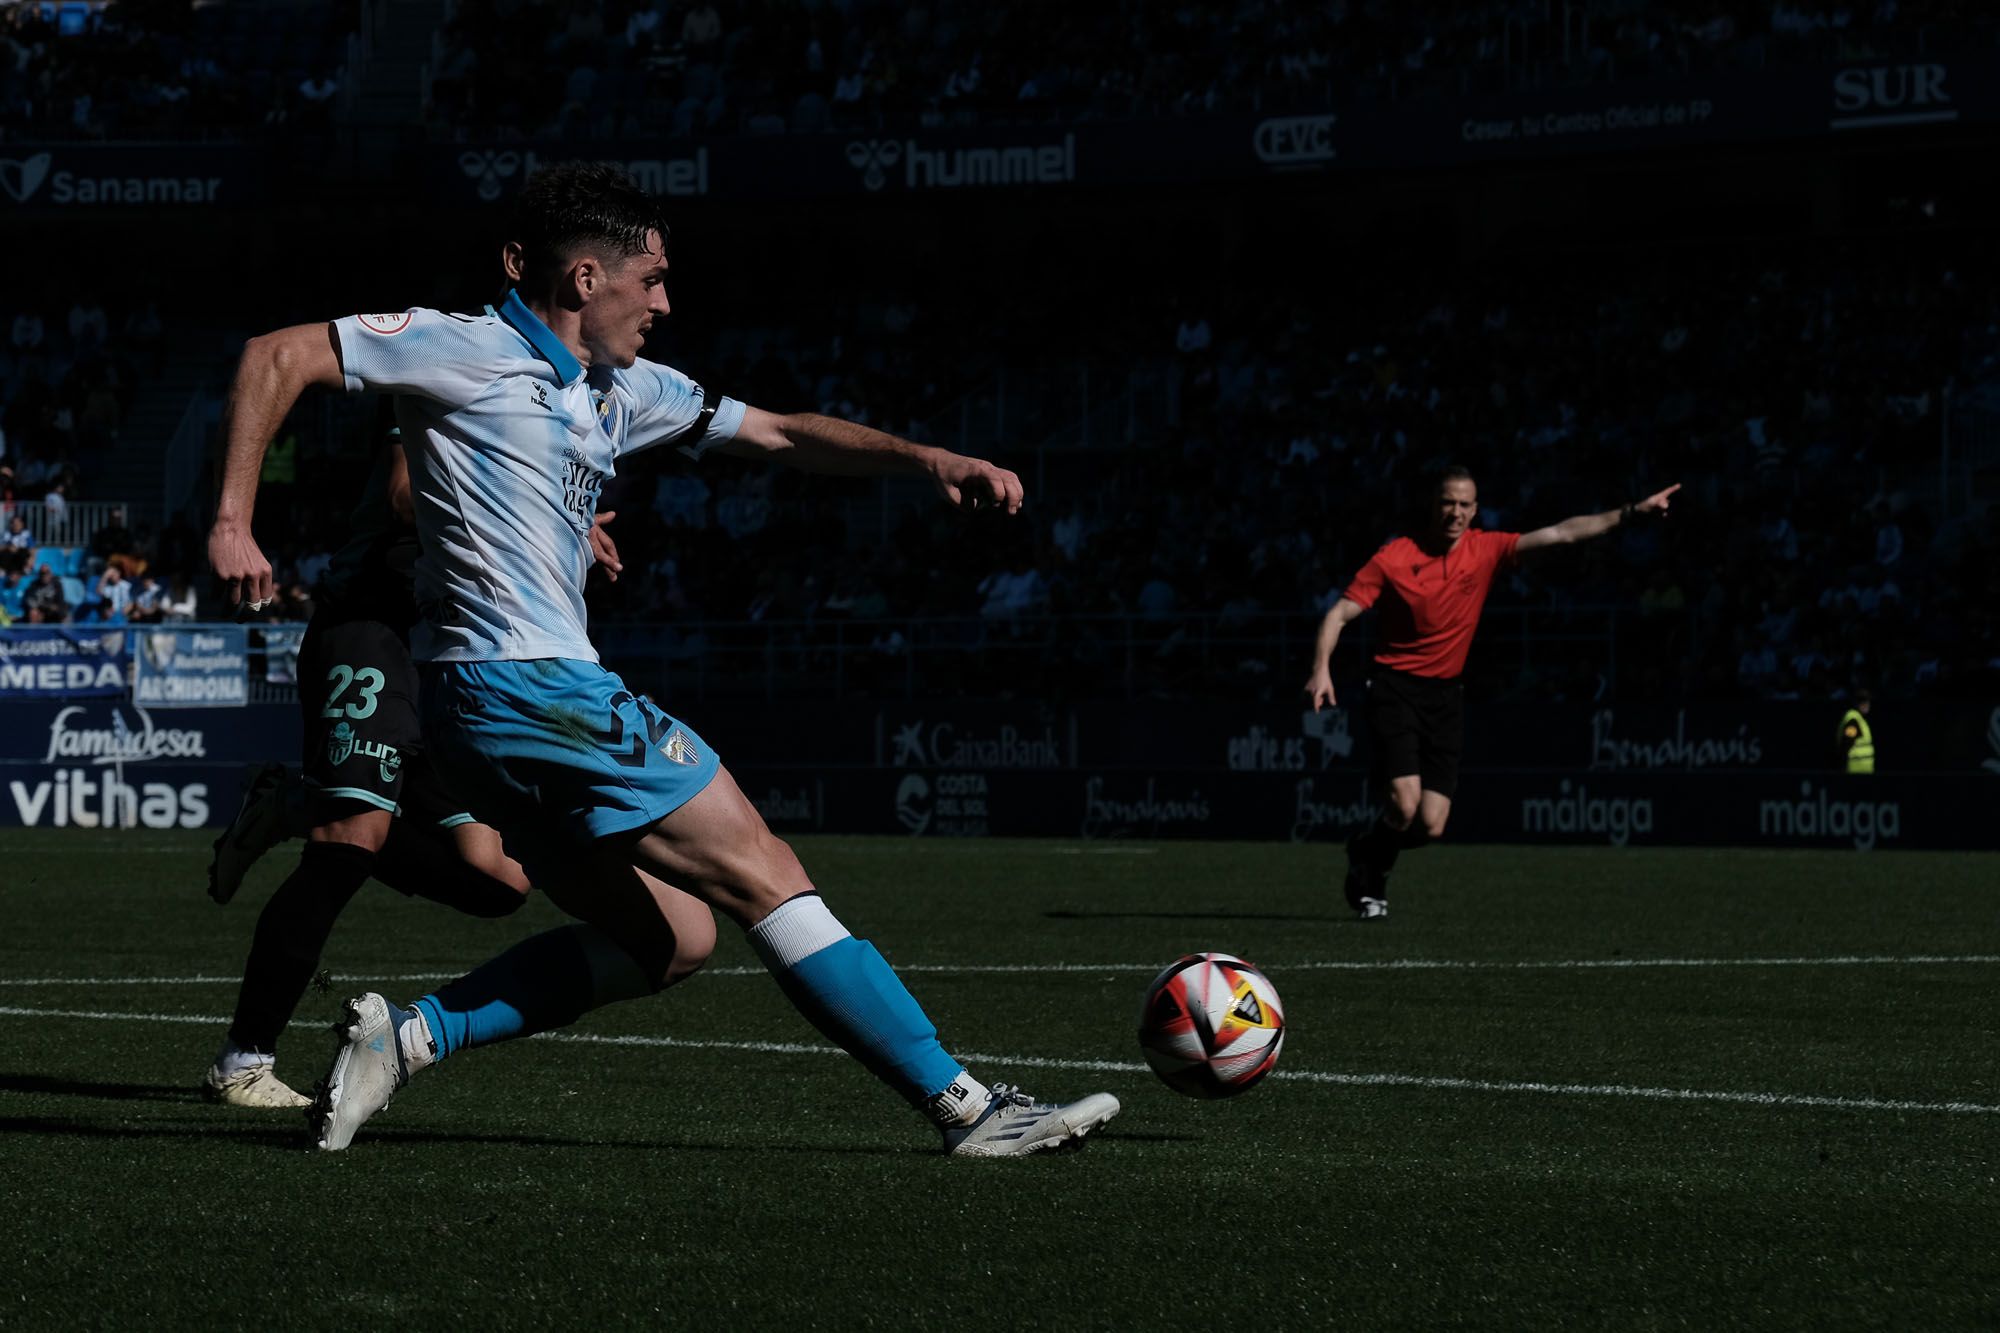 El Málaga CF - Atlético Baleares, en fotos